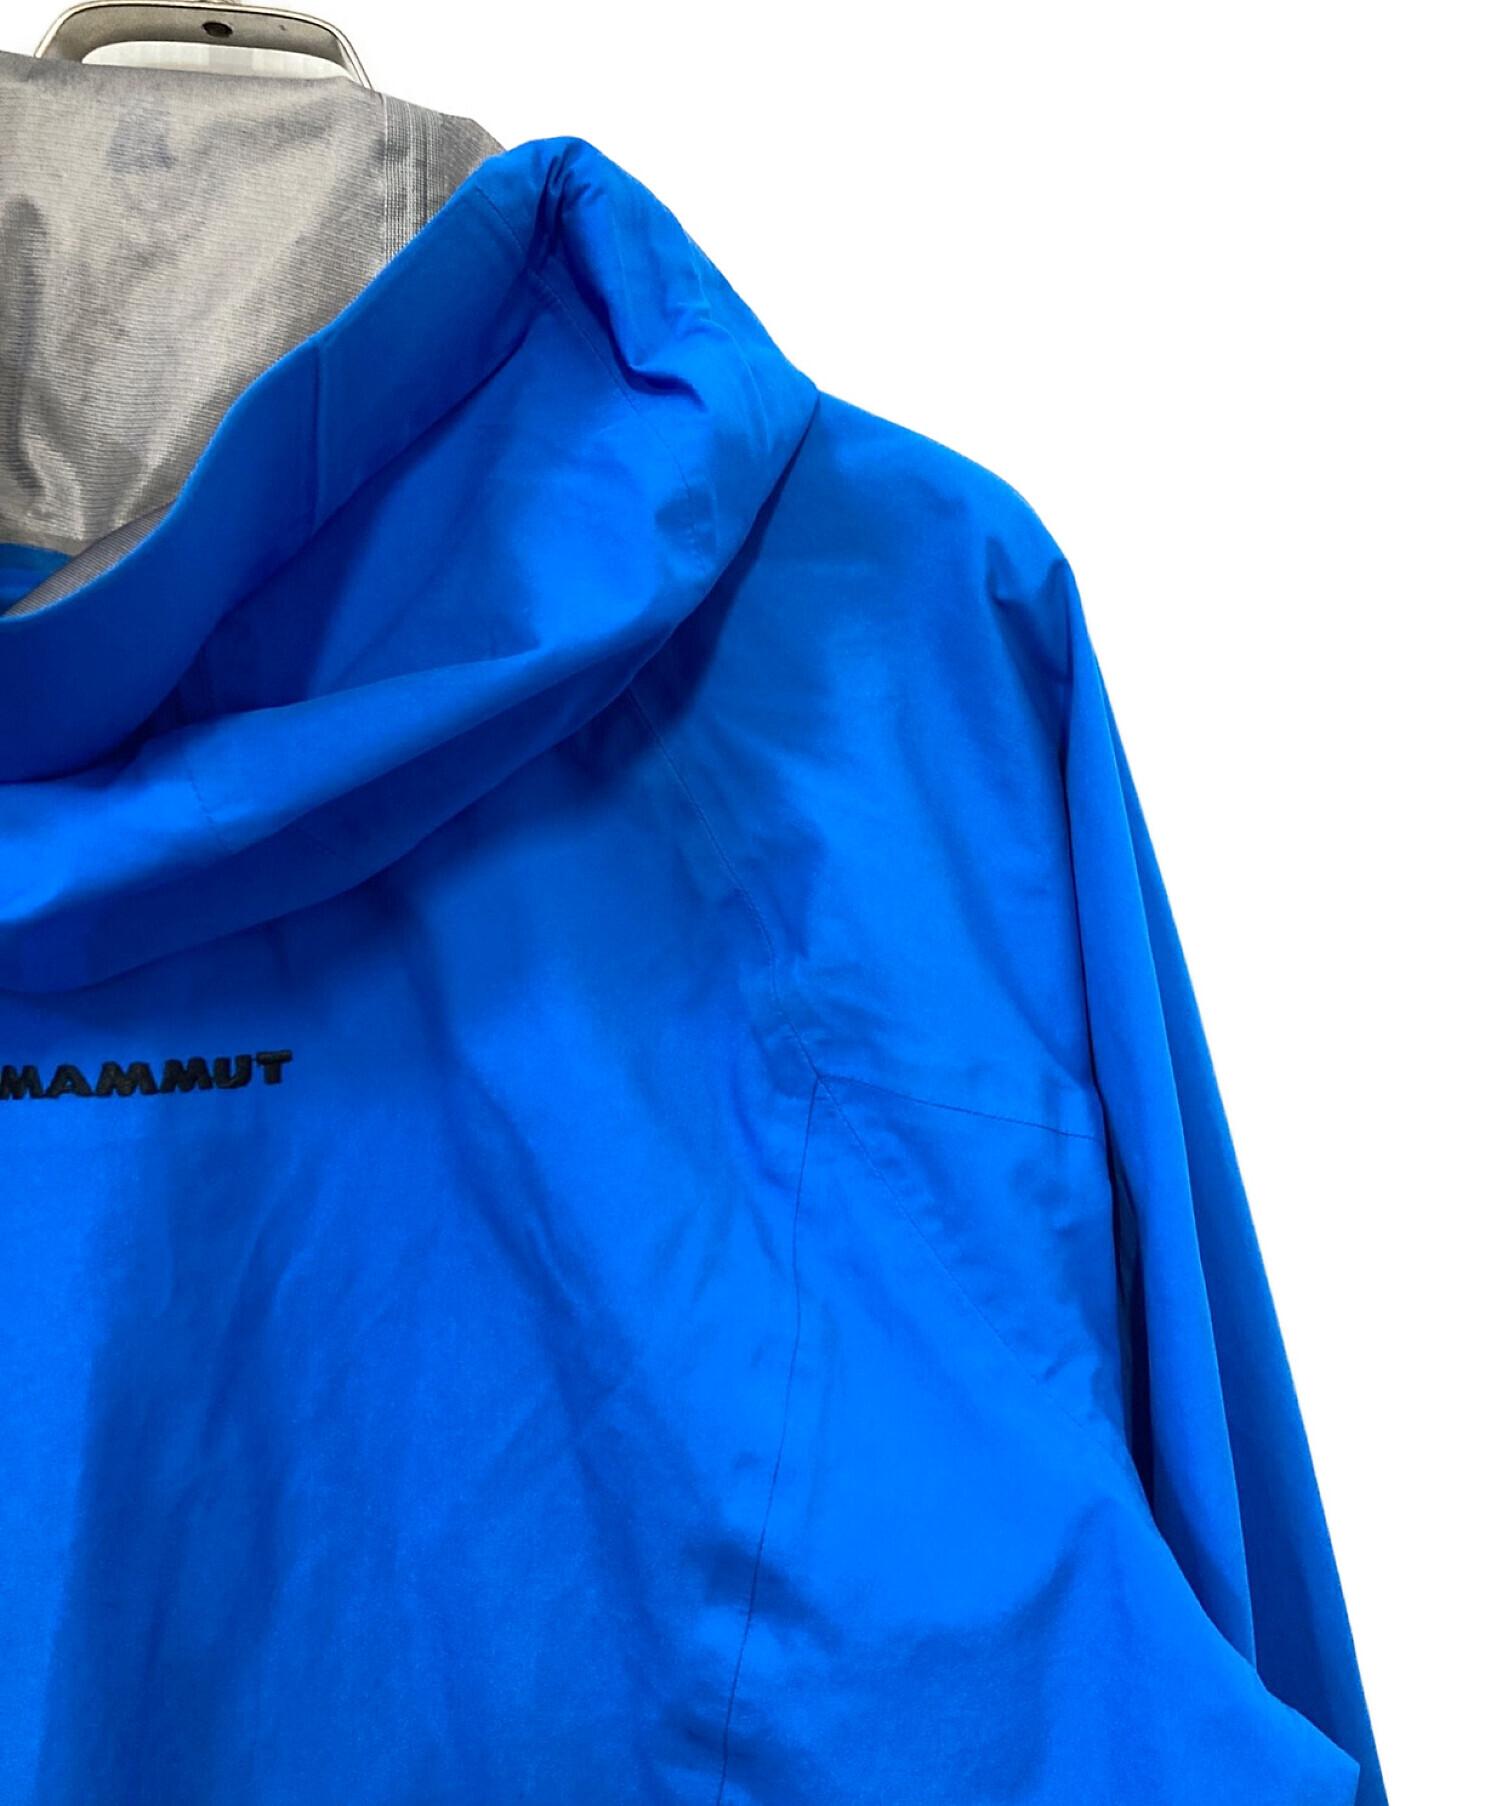 MAMMUT (マムート) Segnas Jacket / セグナスジャケット ブルー サイズ:M